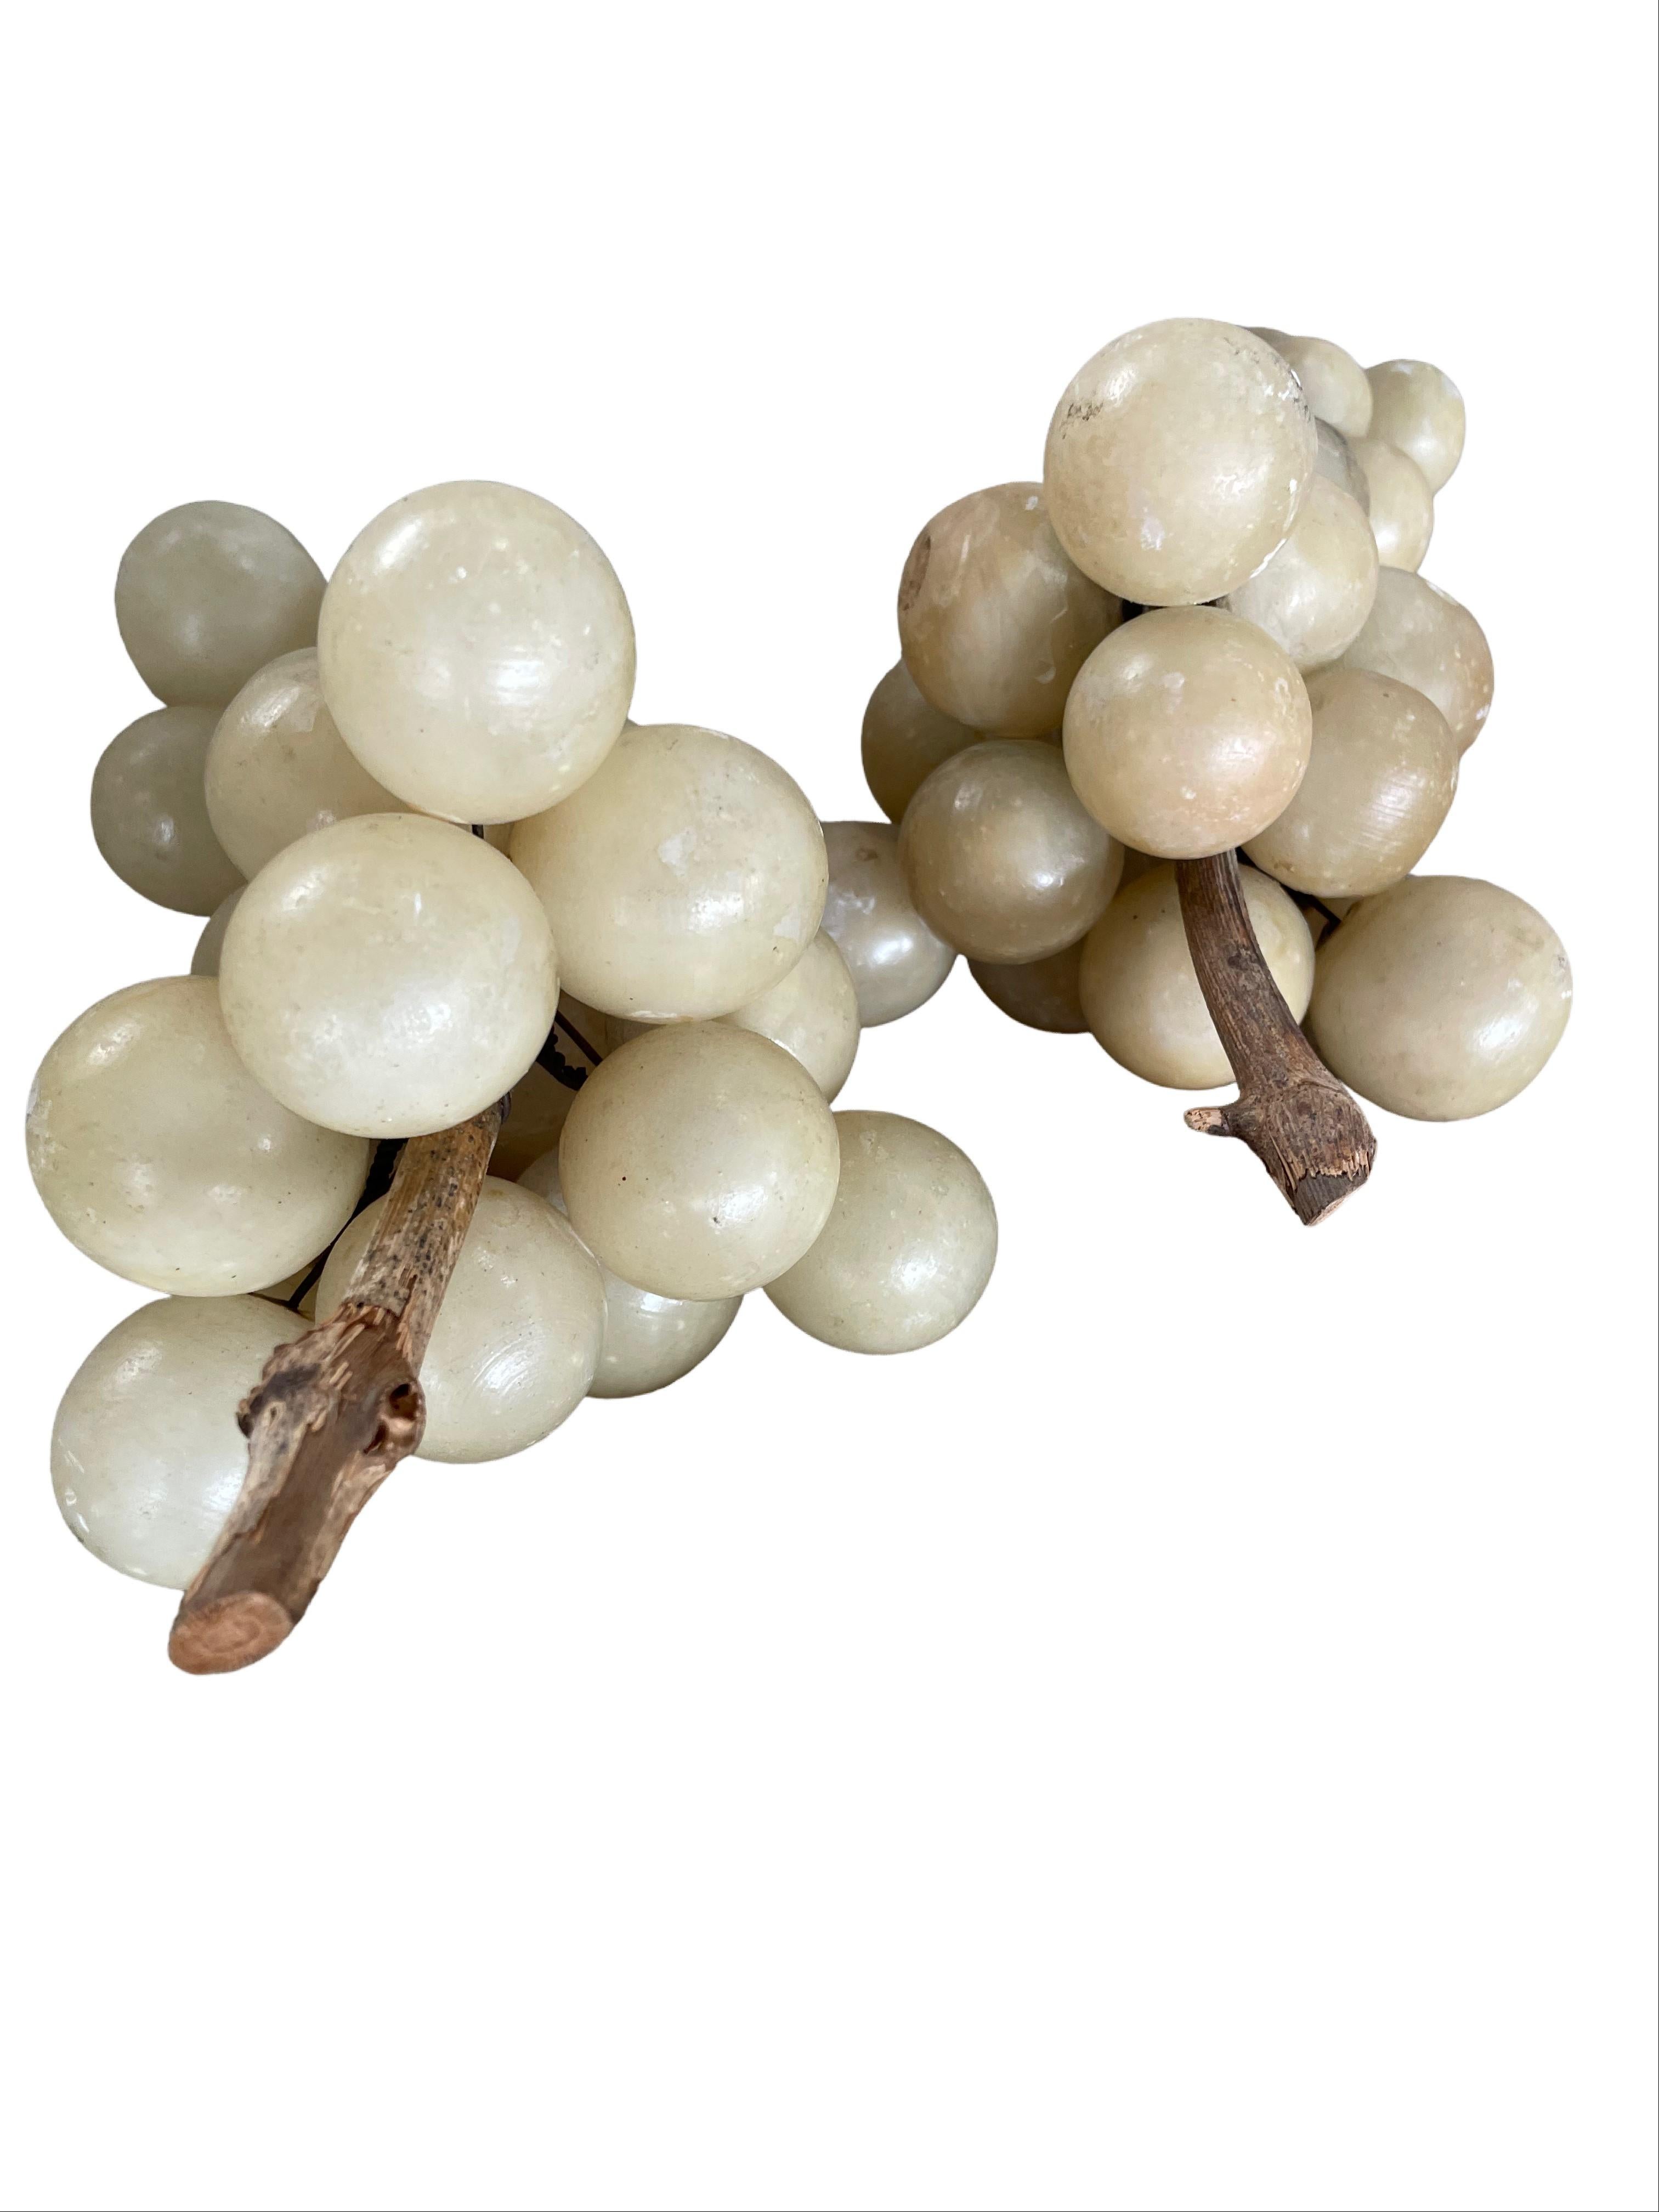 Cet ensemble de grappes de raisin en albâtre, fabriquées à la main au milieu du siècle et dotées de tiges en bois, nous transporte dans les vignobles italiens. Composées de deux grandes grappes et de trois petites, les riches teintes chaudes de la